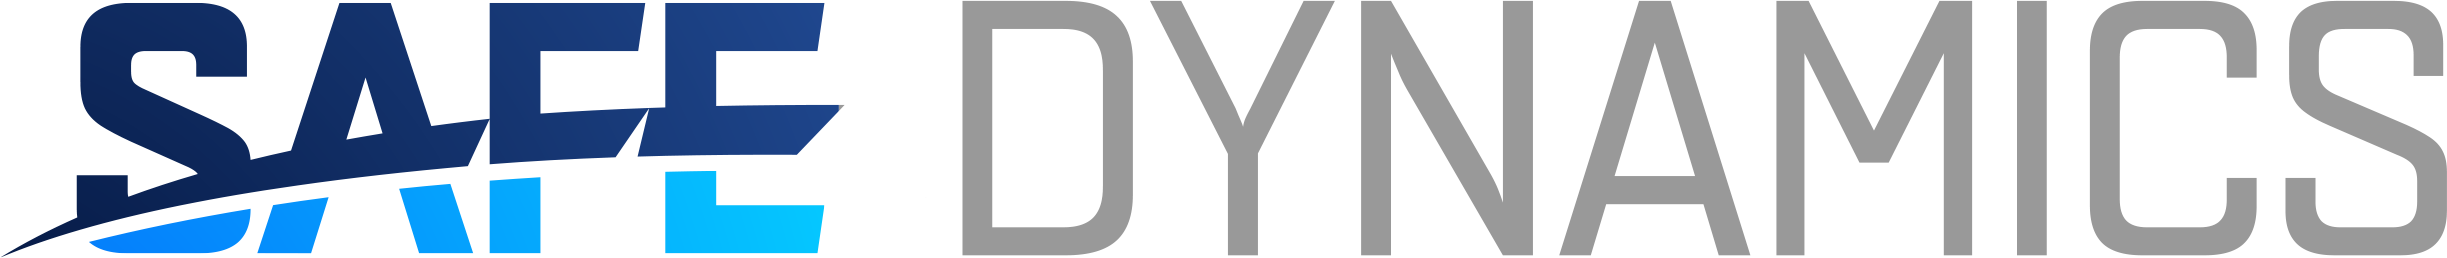 SD logo spellout